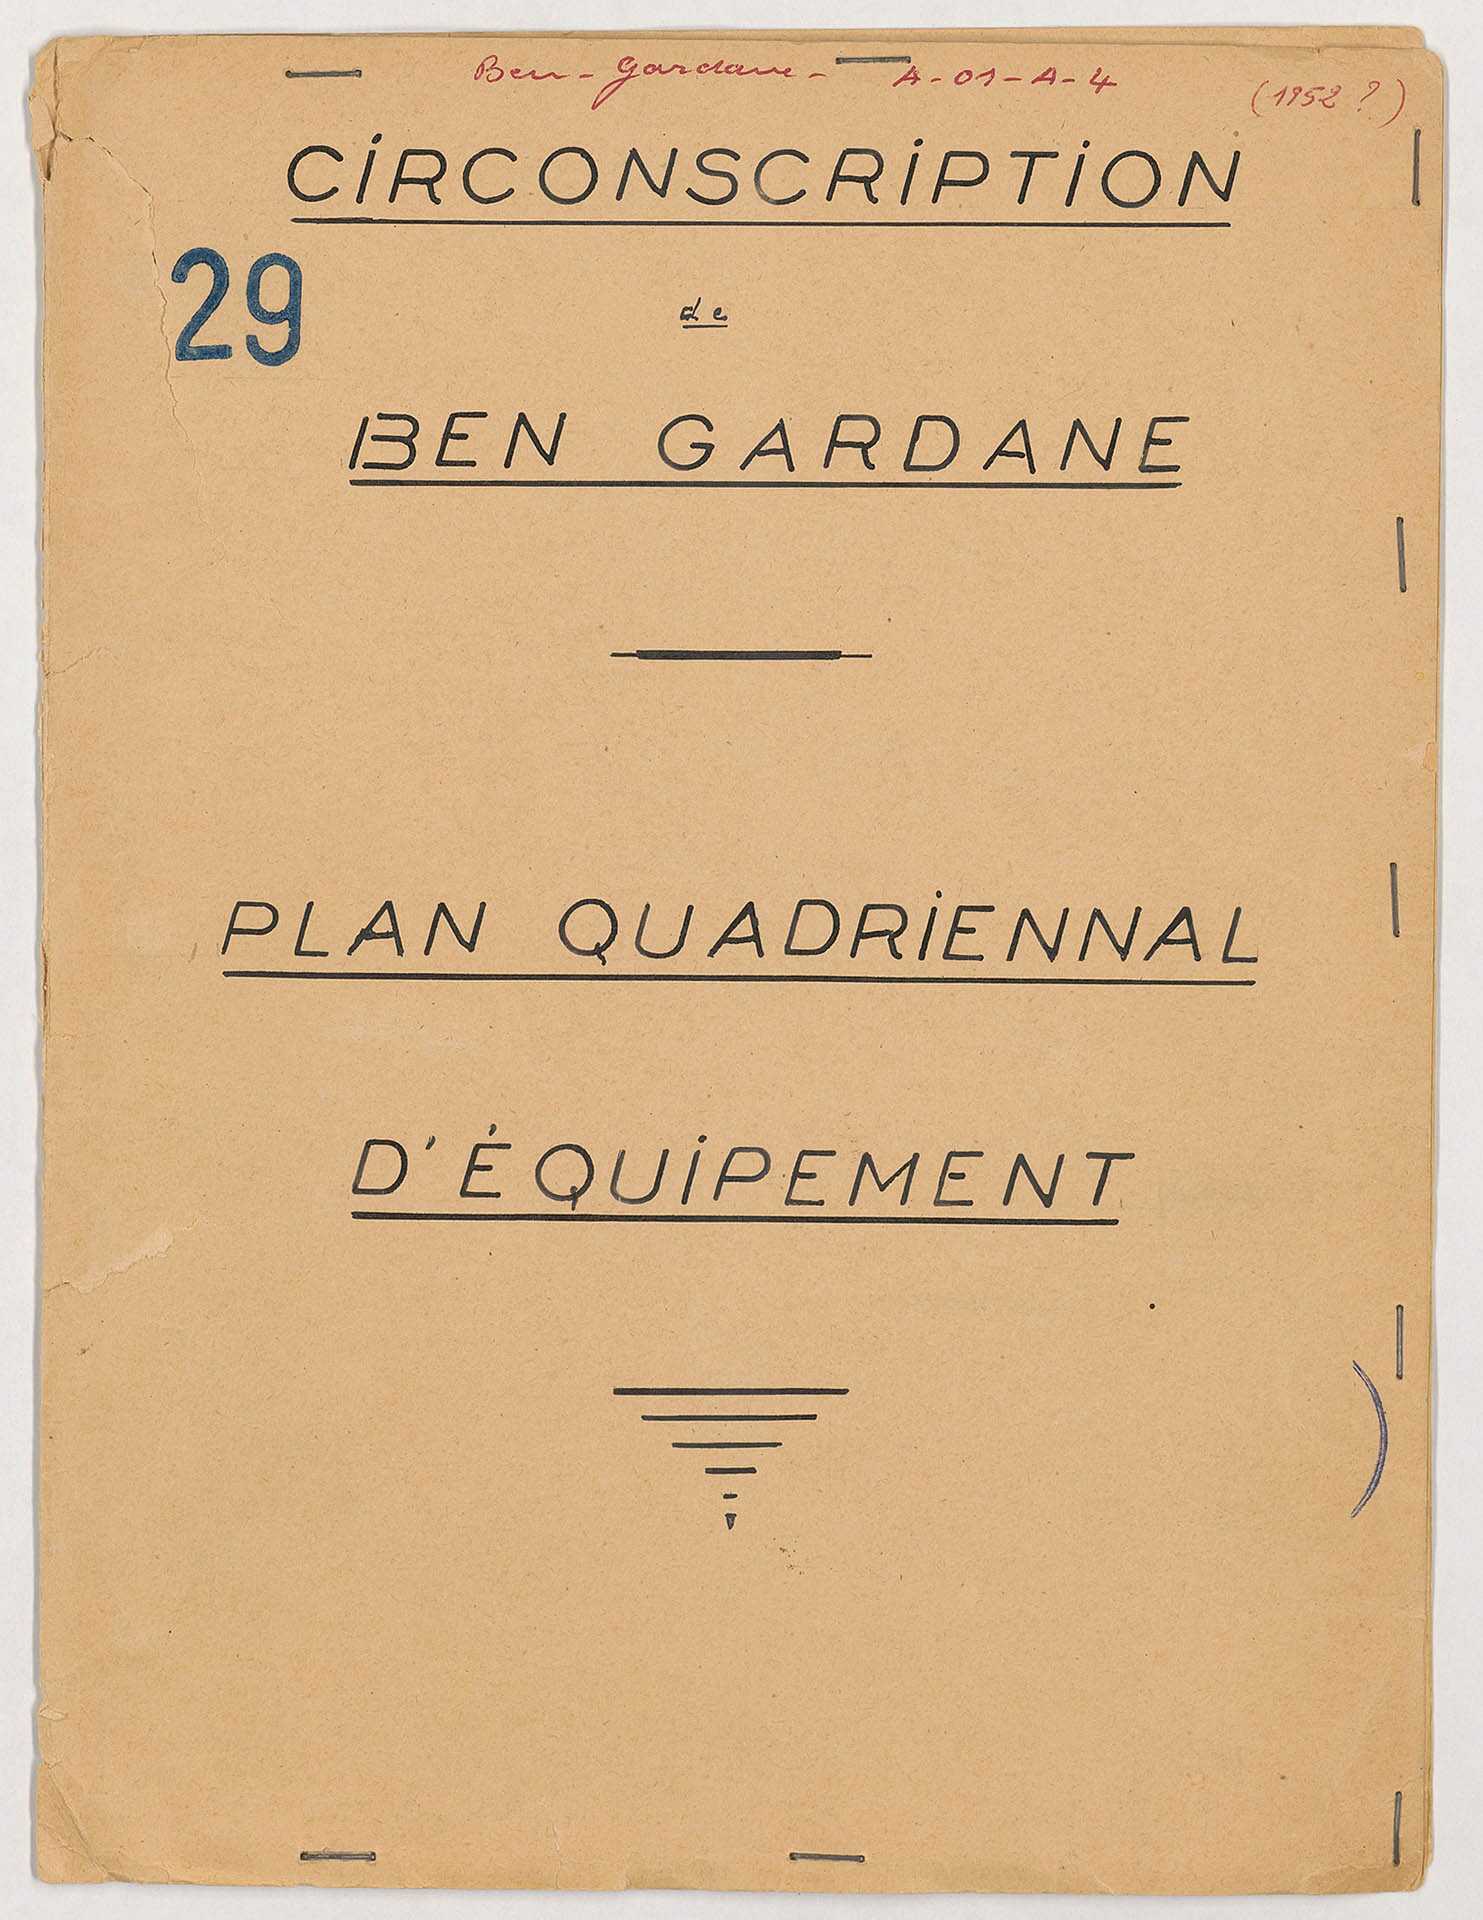 Circonscription de Ben Gardane, Plan quadriennal d'équipement de la circonscription de Ben Gardane, 31 f., carte jointe.